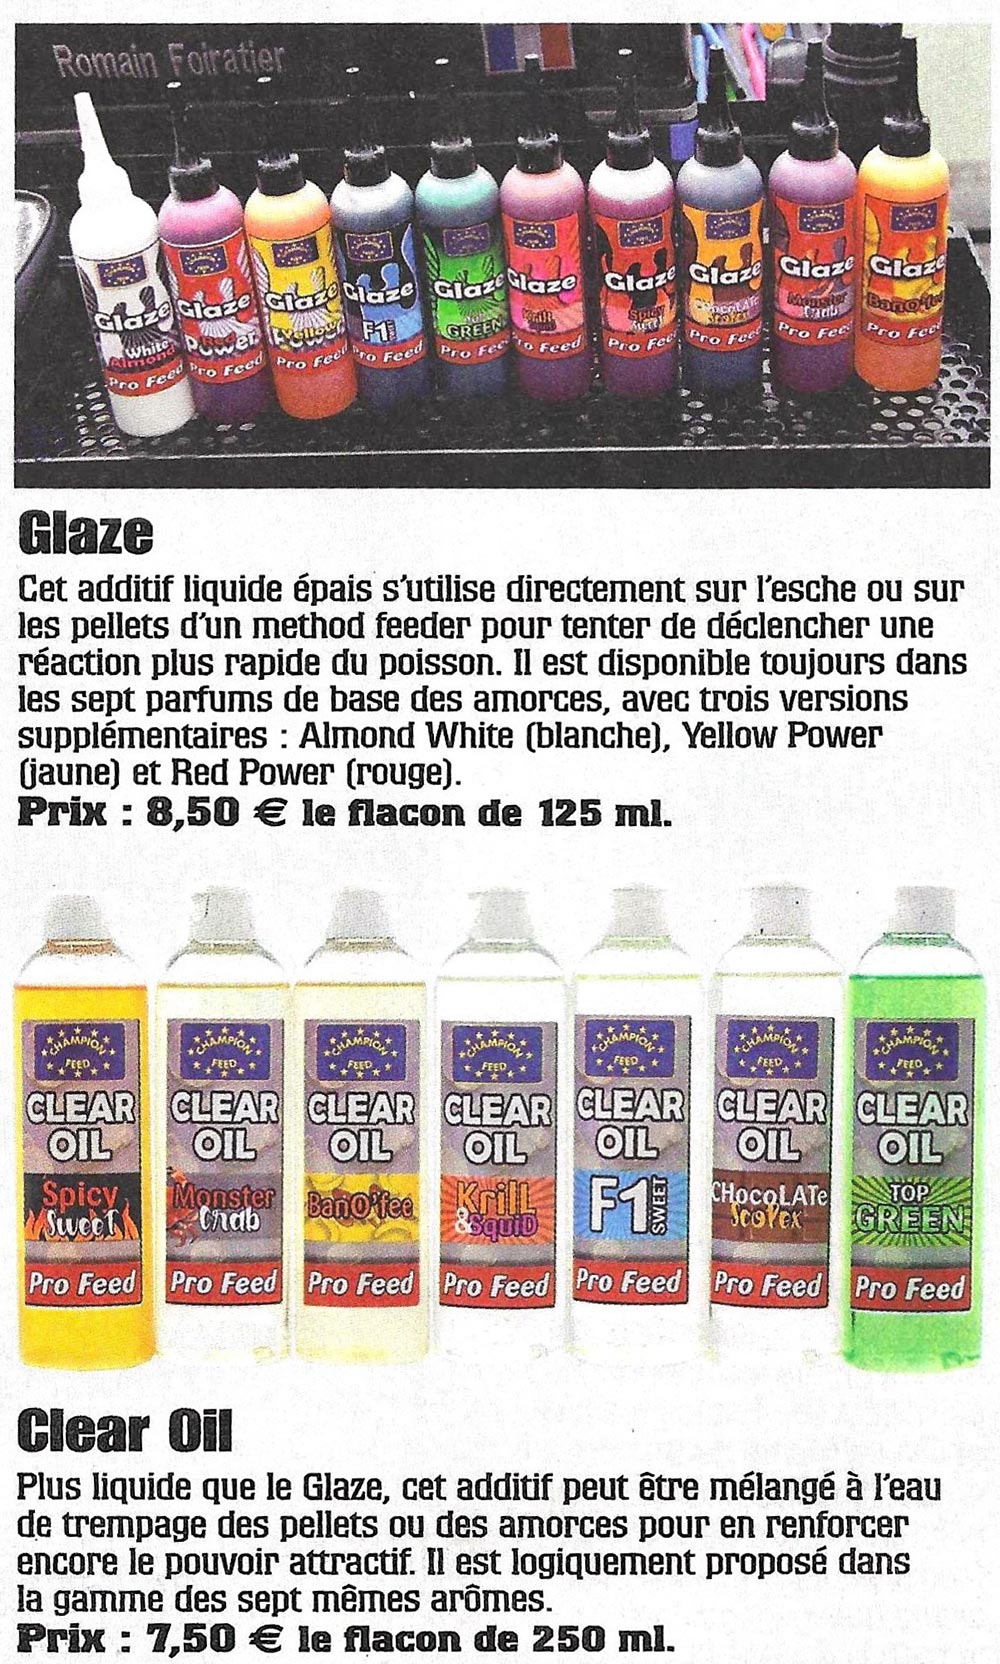 glaze clear oil